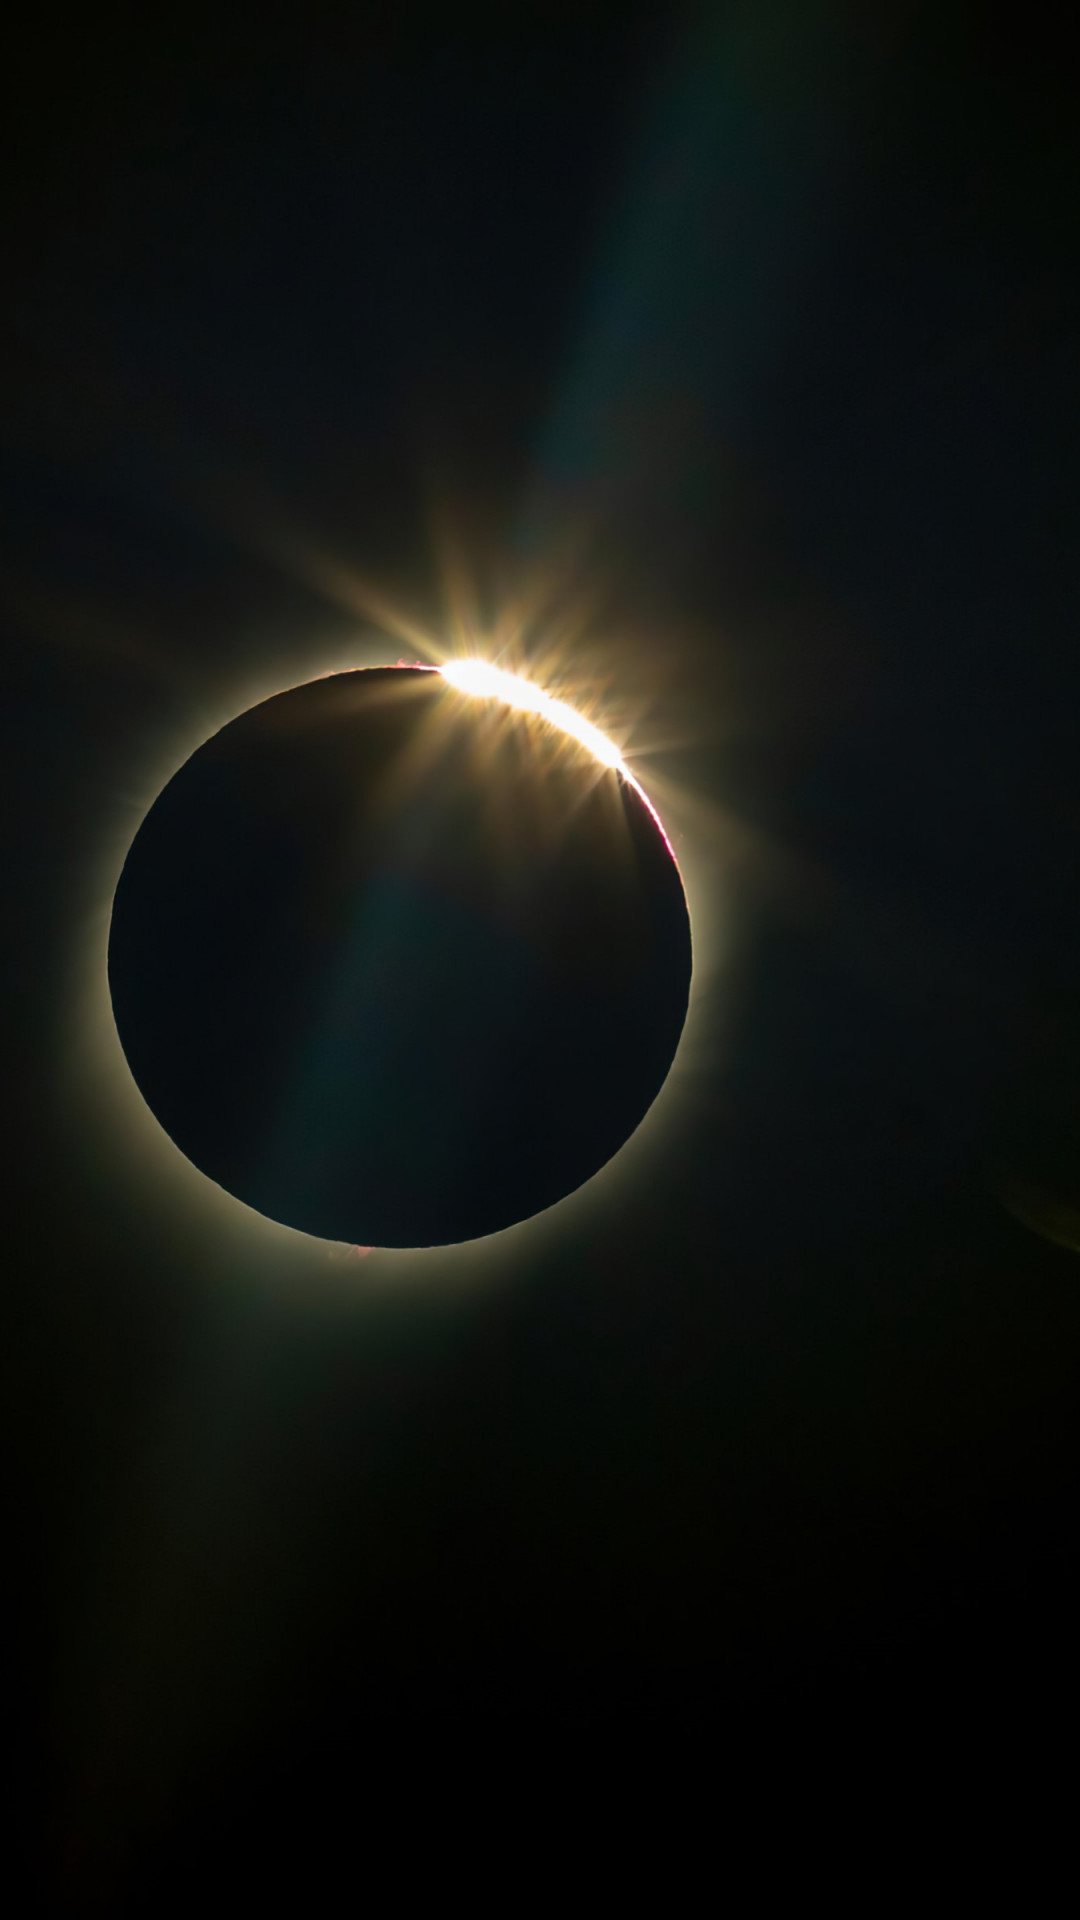 Sun eclipse wallpaper 1080x1920